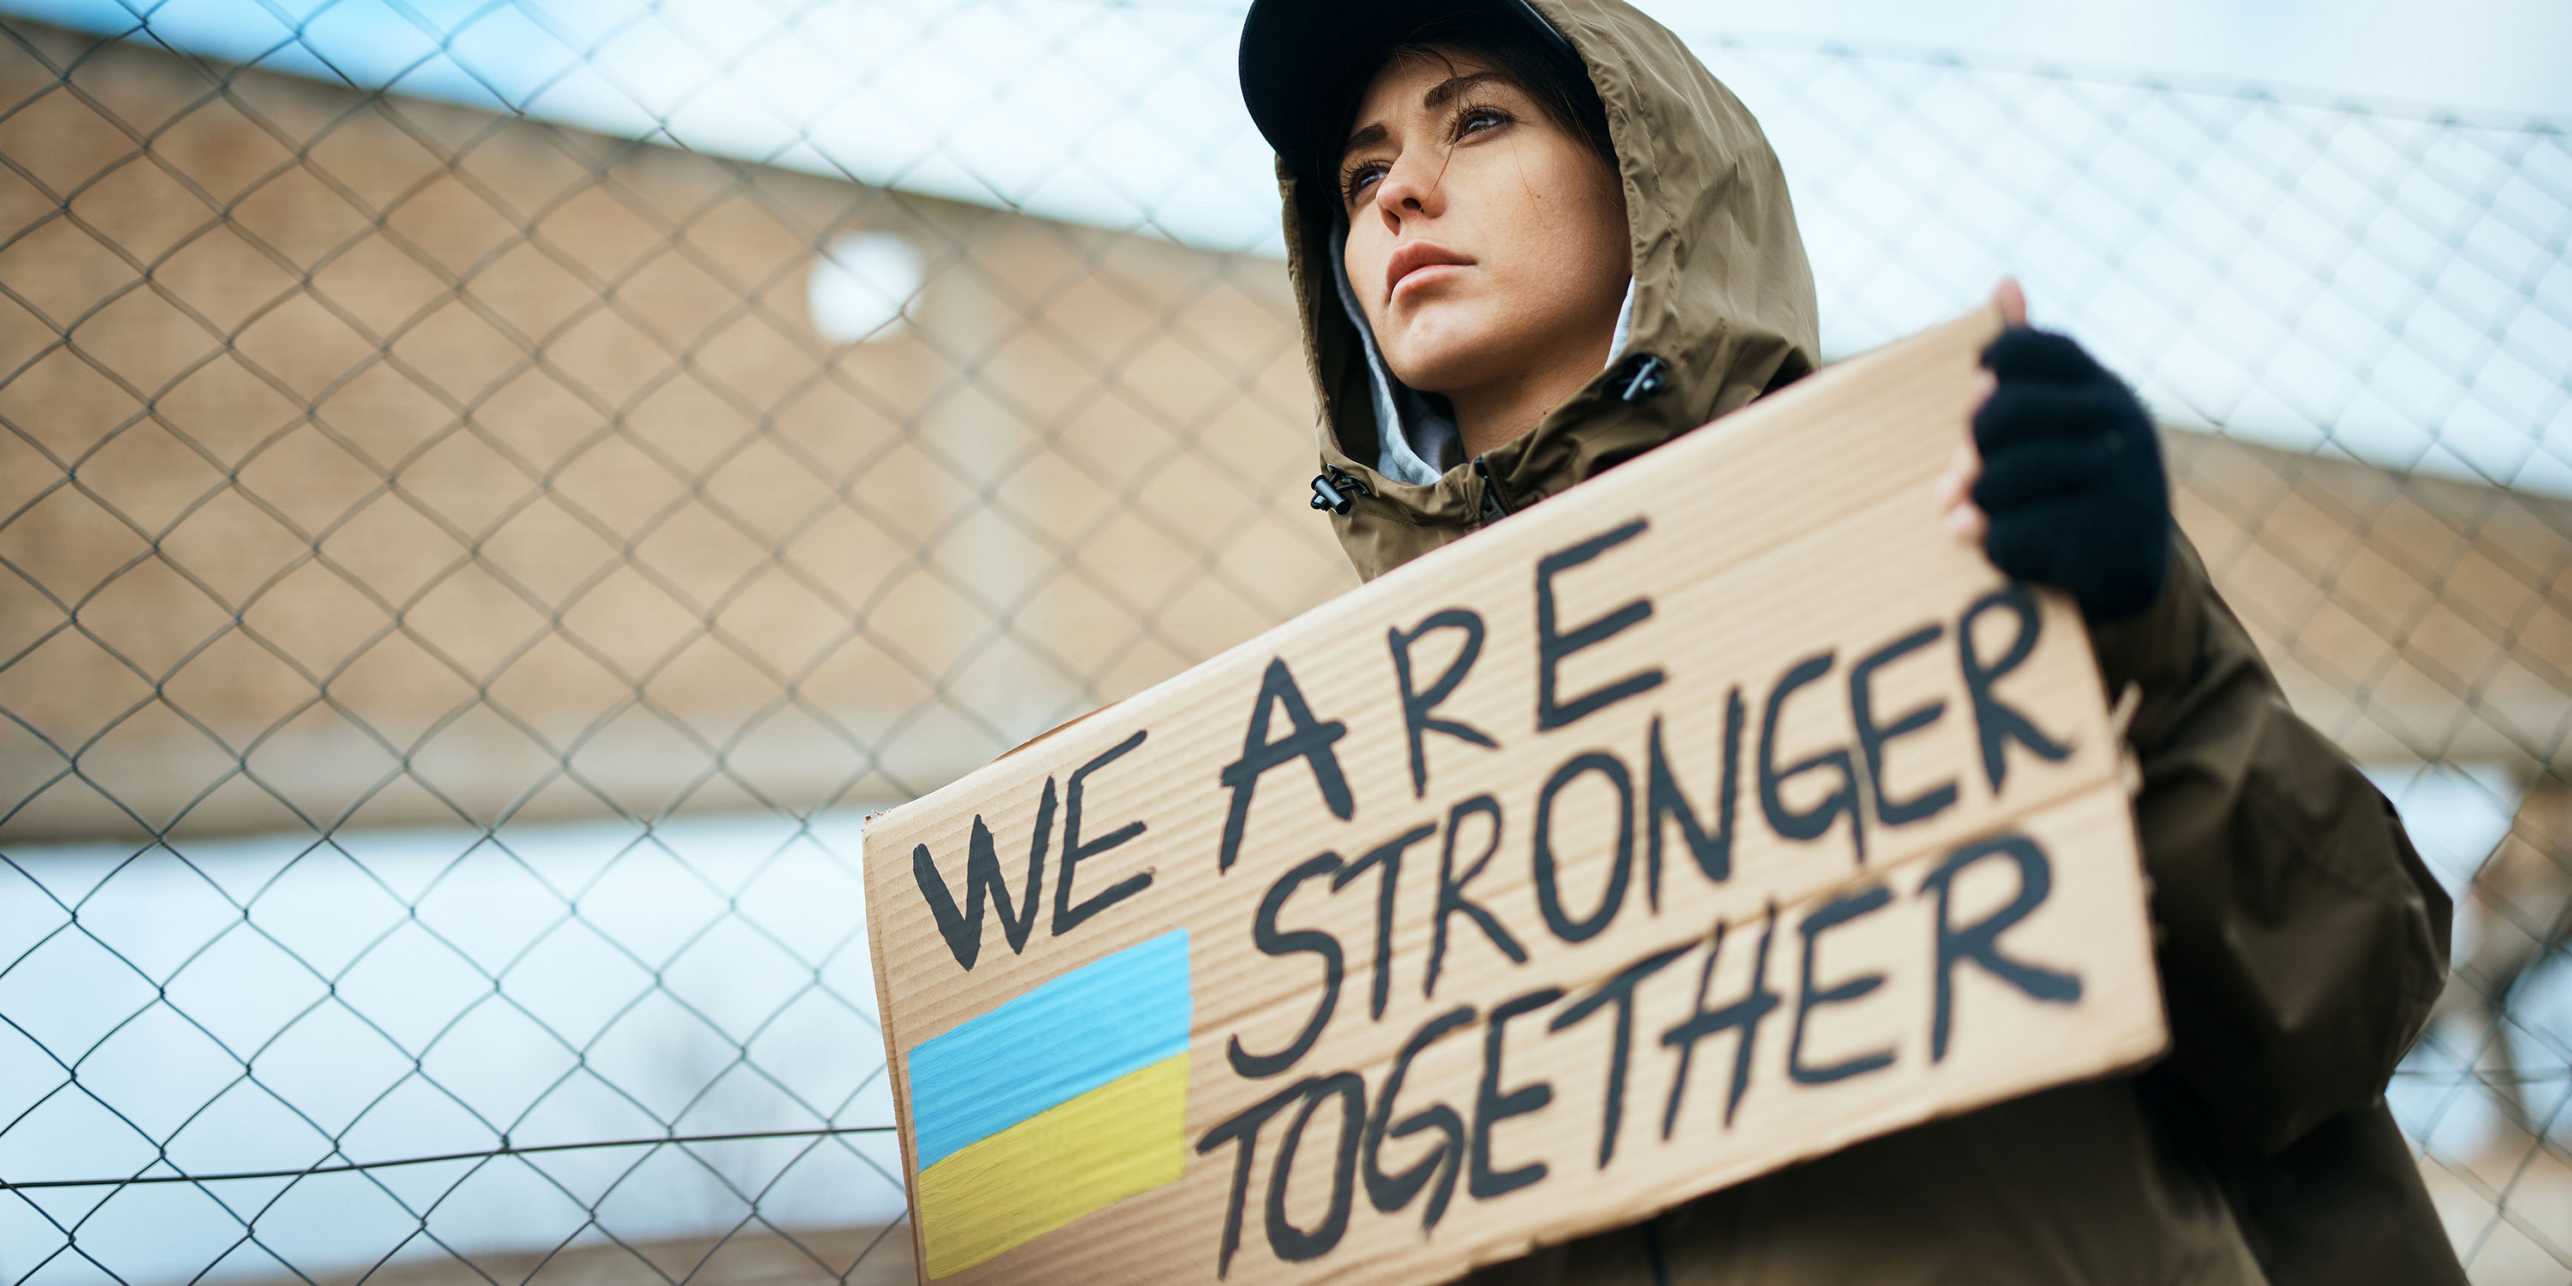 Eine ukrainische Demonstrantin hält ein Pappschild auf dem "We are stronger together" steht